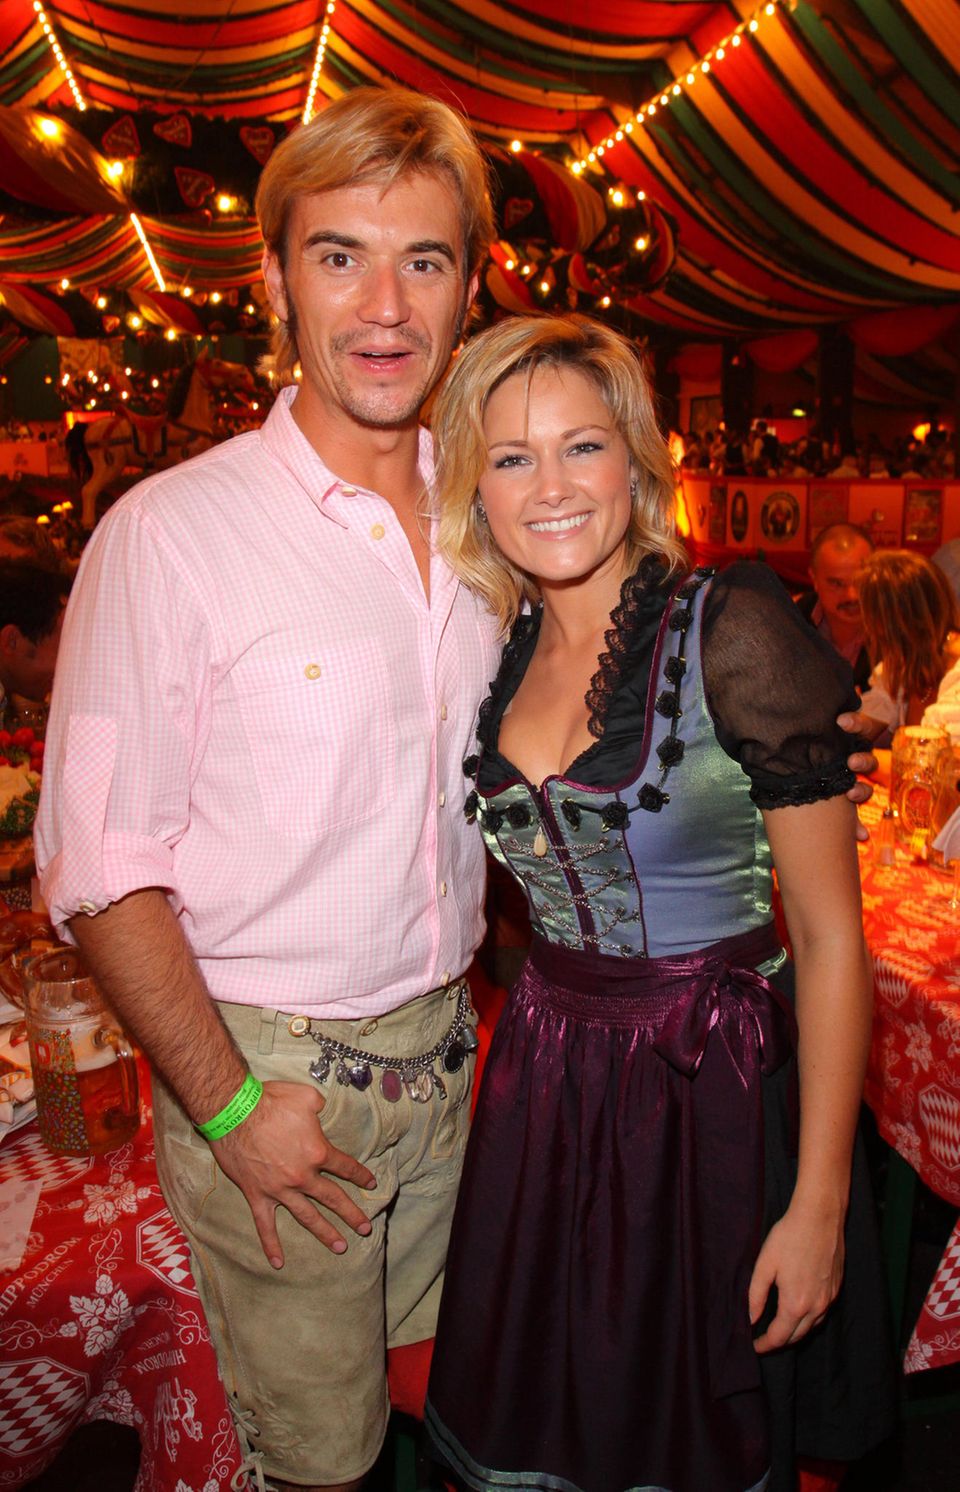 Florian Silbereisen and Helene Fischer in 2009 